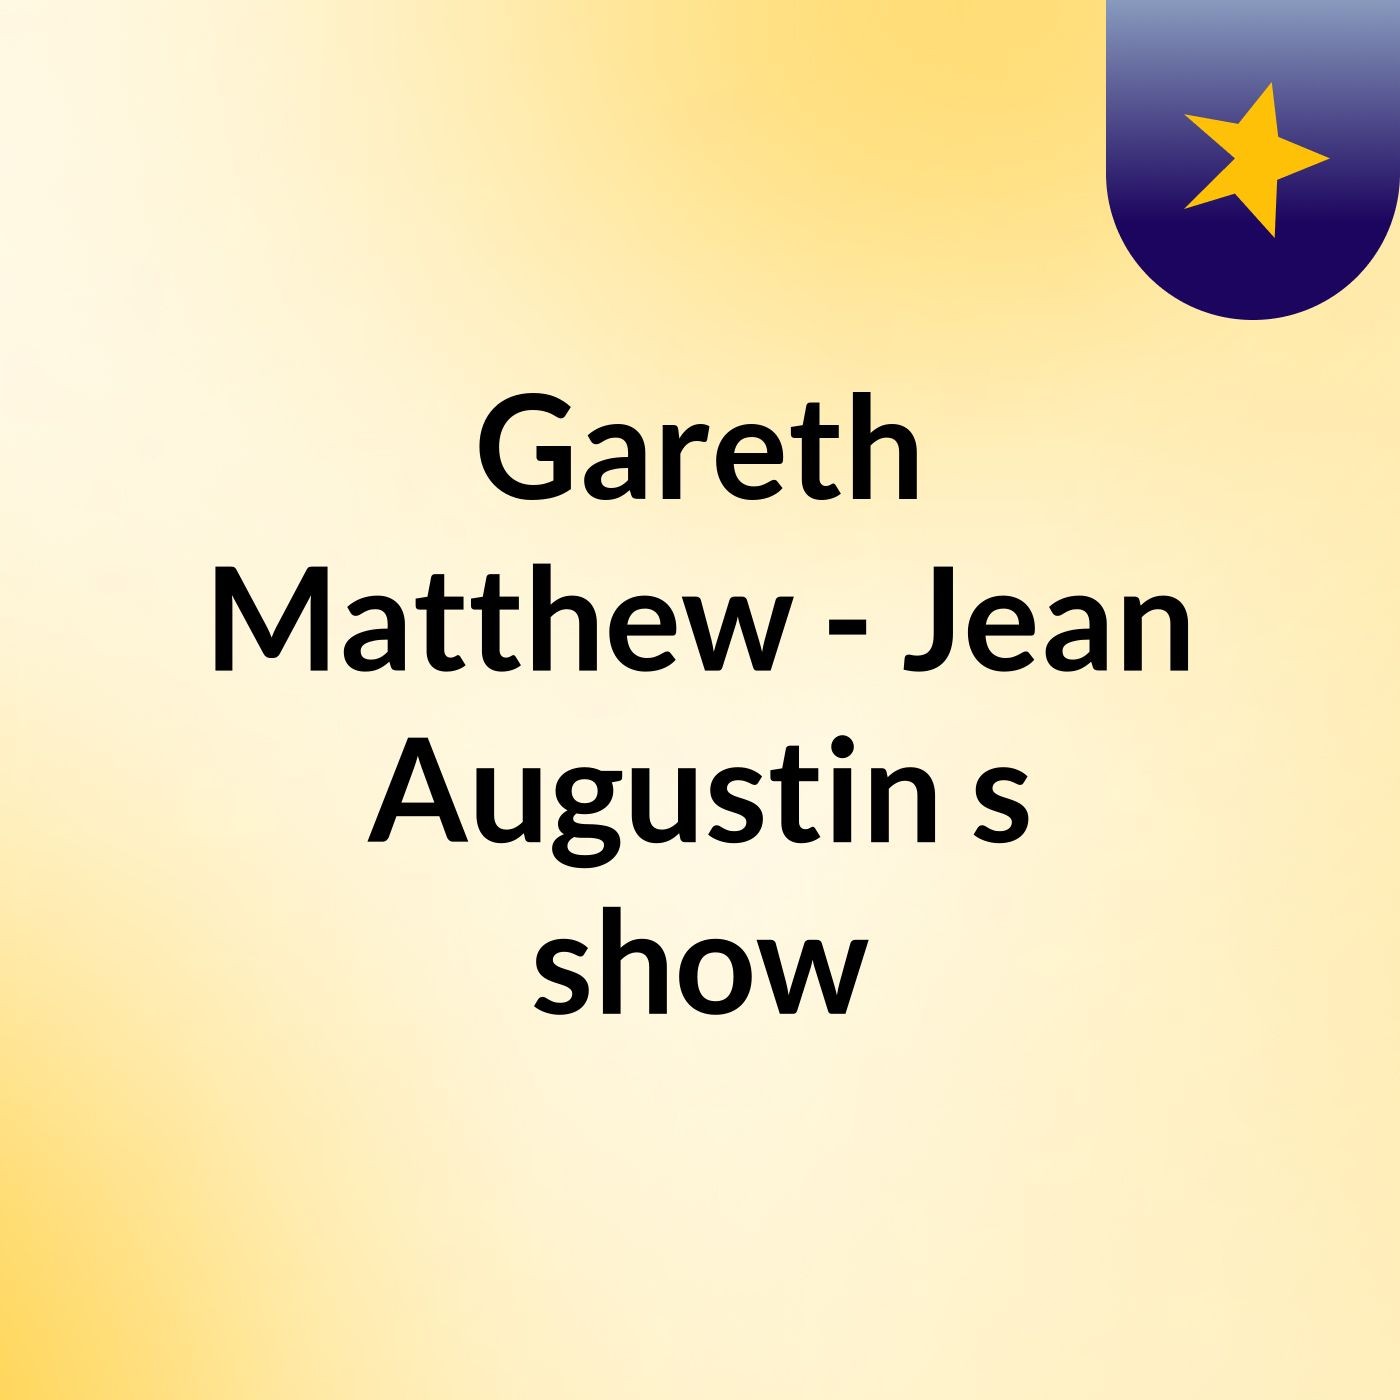 Gareth Matthew - Jean Augustin's show